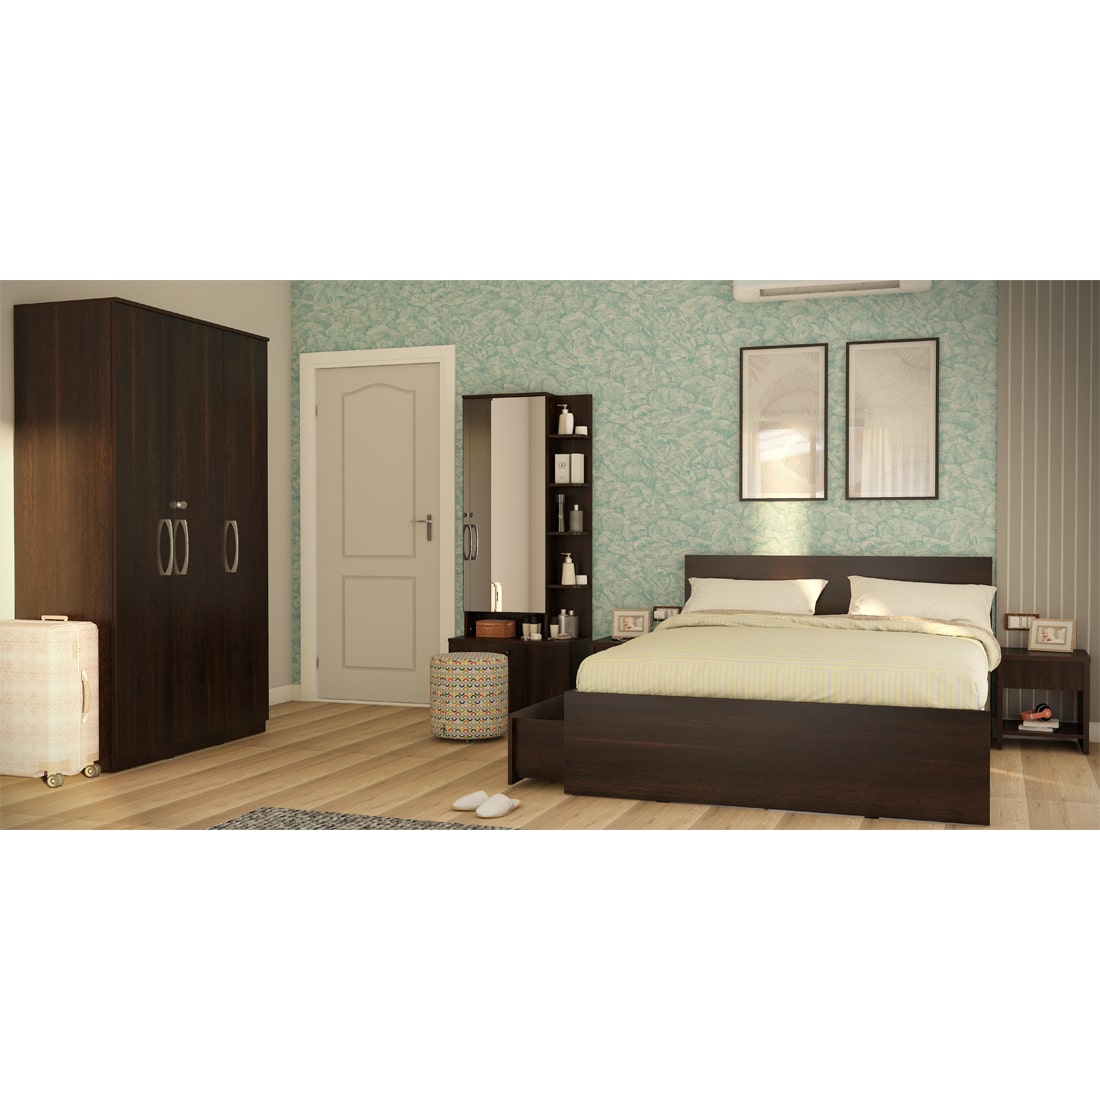 Modena 09: Set of 5 Bedroom Furniture - 3 door Wardrobe, Queen Bed Left, Dresser and Side Tables